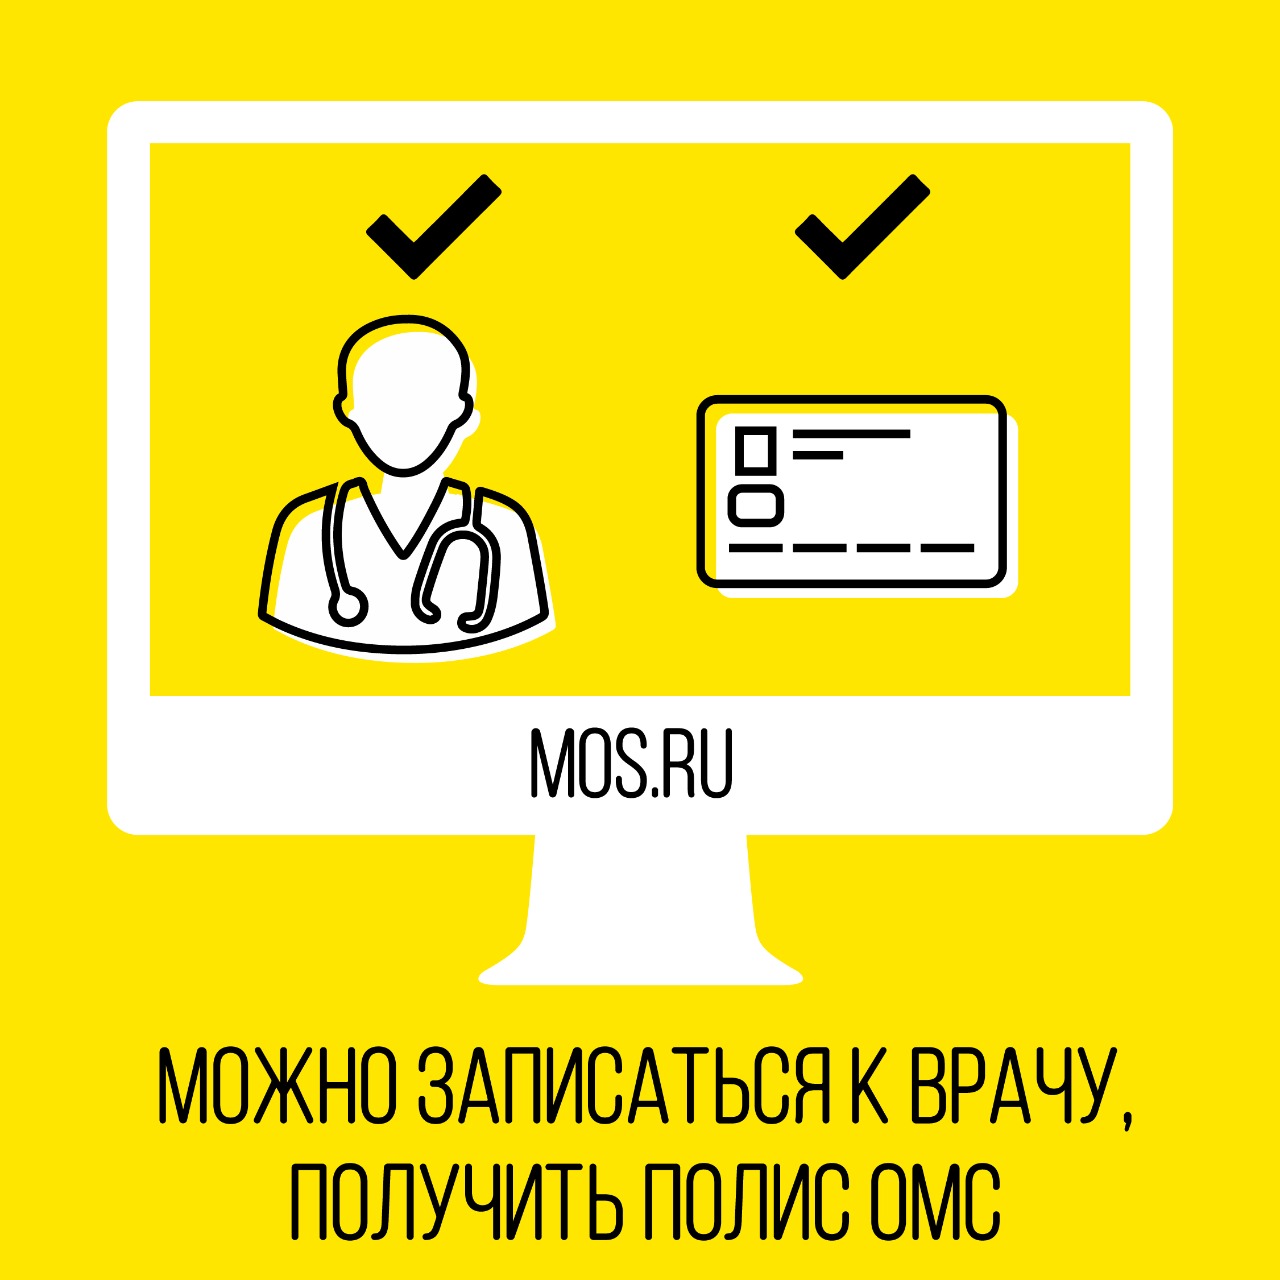 Дистанционно позаботиться о здоровье можно с помощью mos.ru